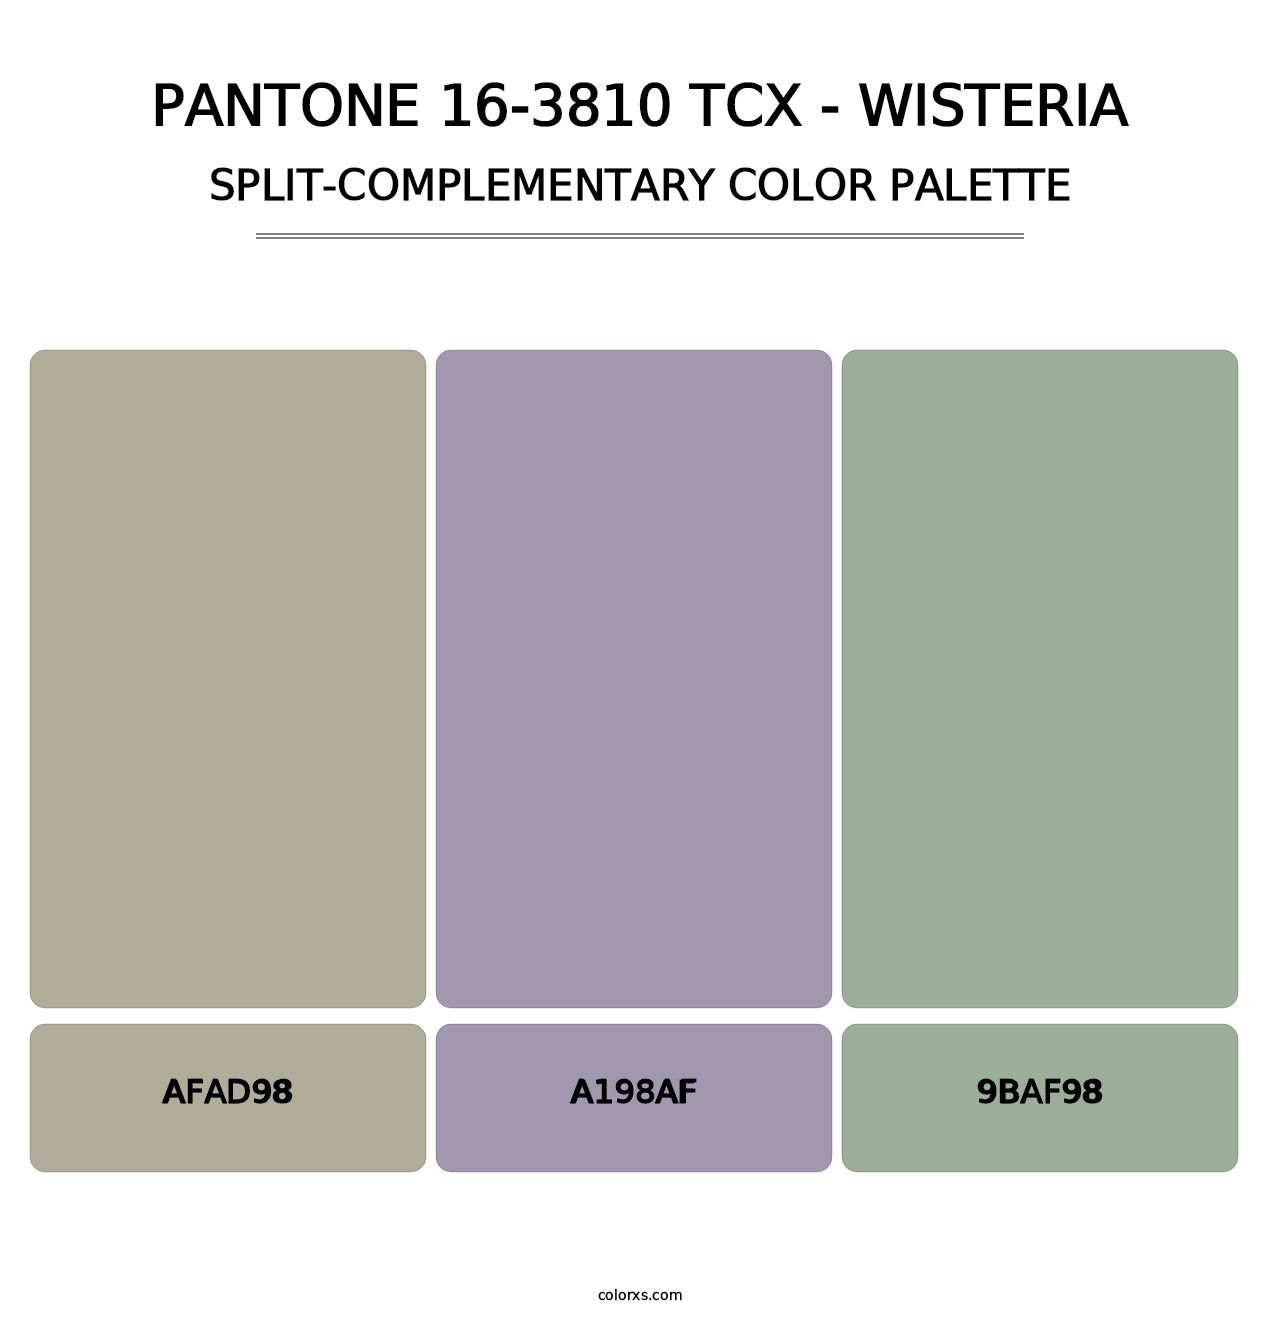 PANTONE 16-3810 TCX - Wisteria - Split-Complementary Color Palette